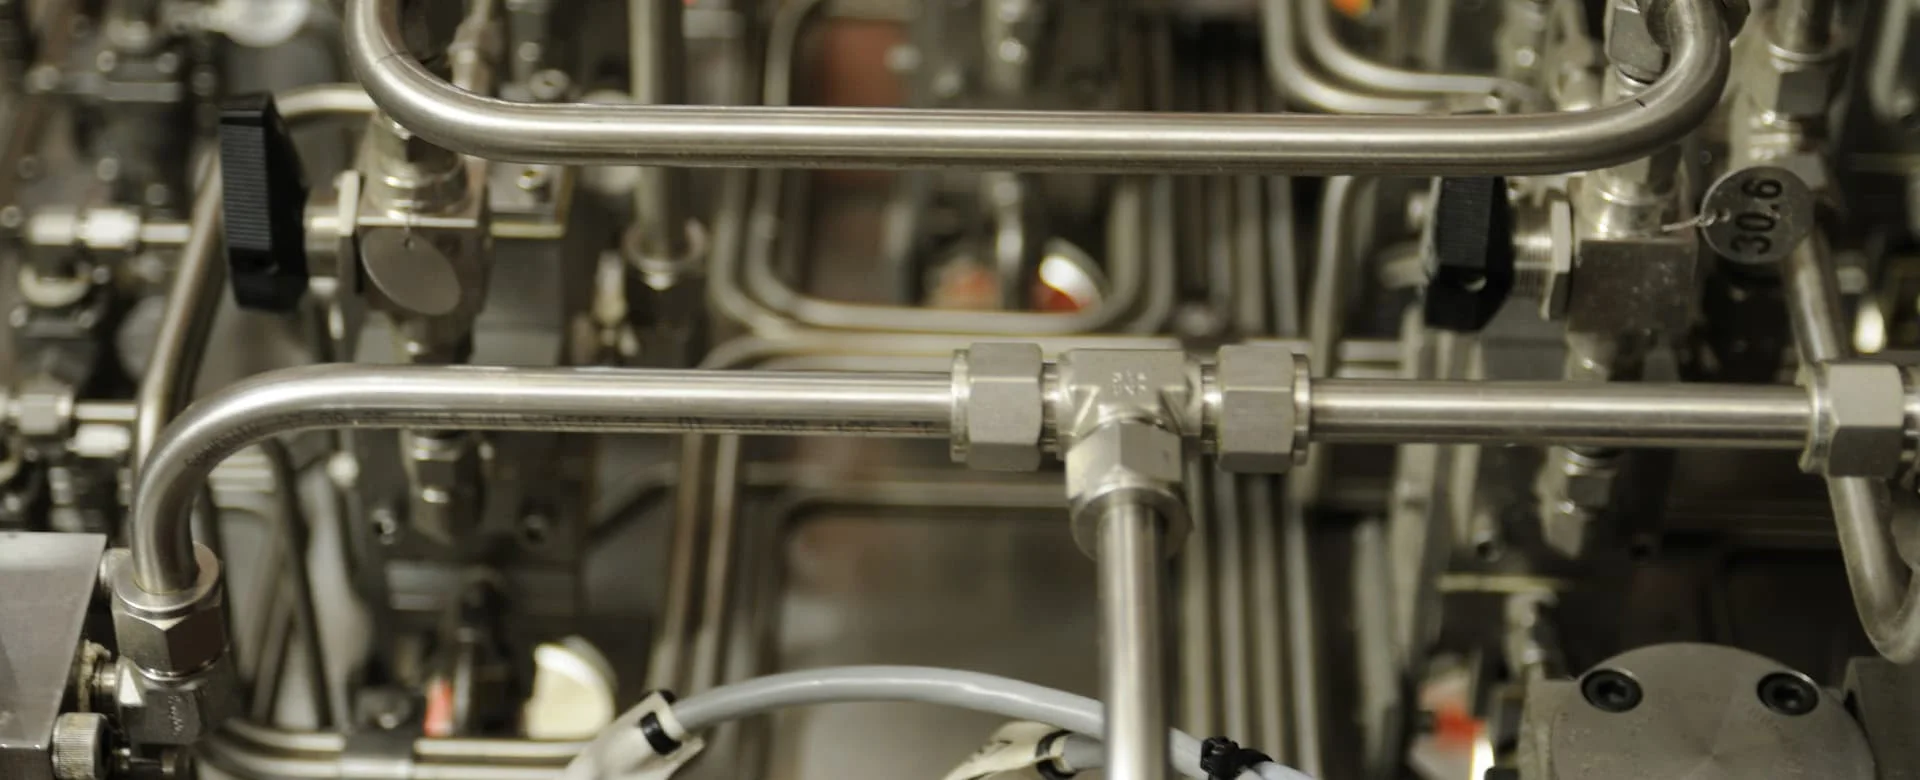 Hình ảnh ống thủy lực chất liệu inox tại nhà máy